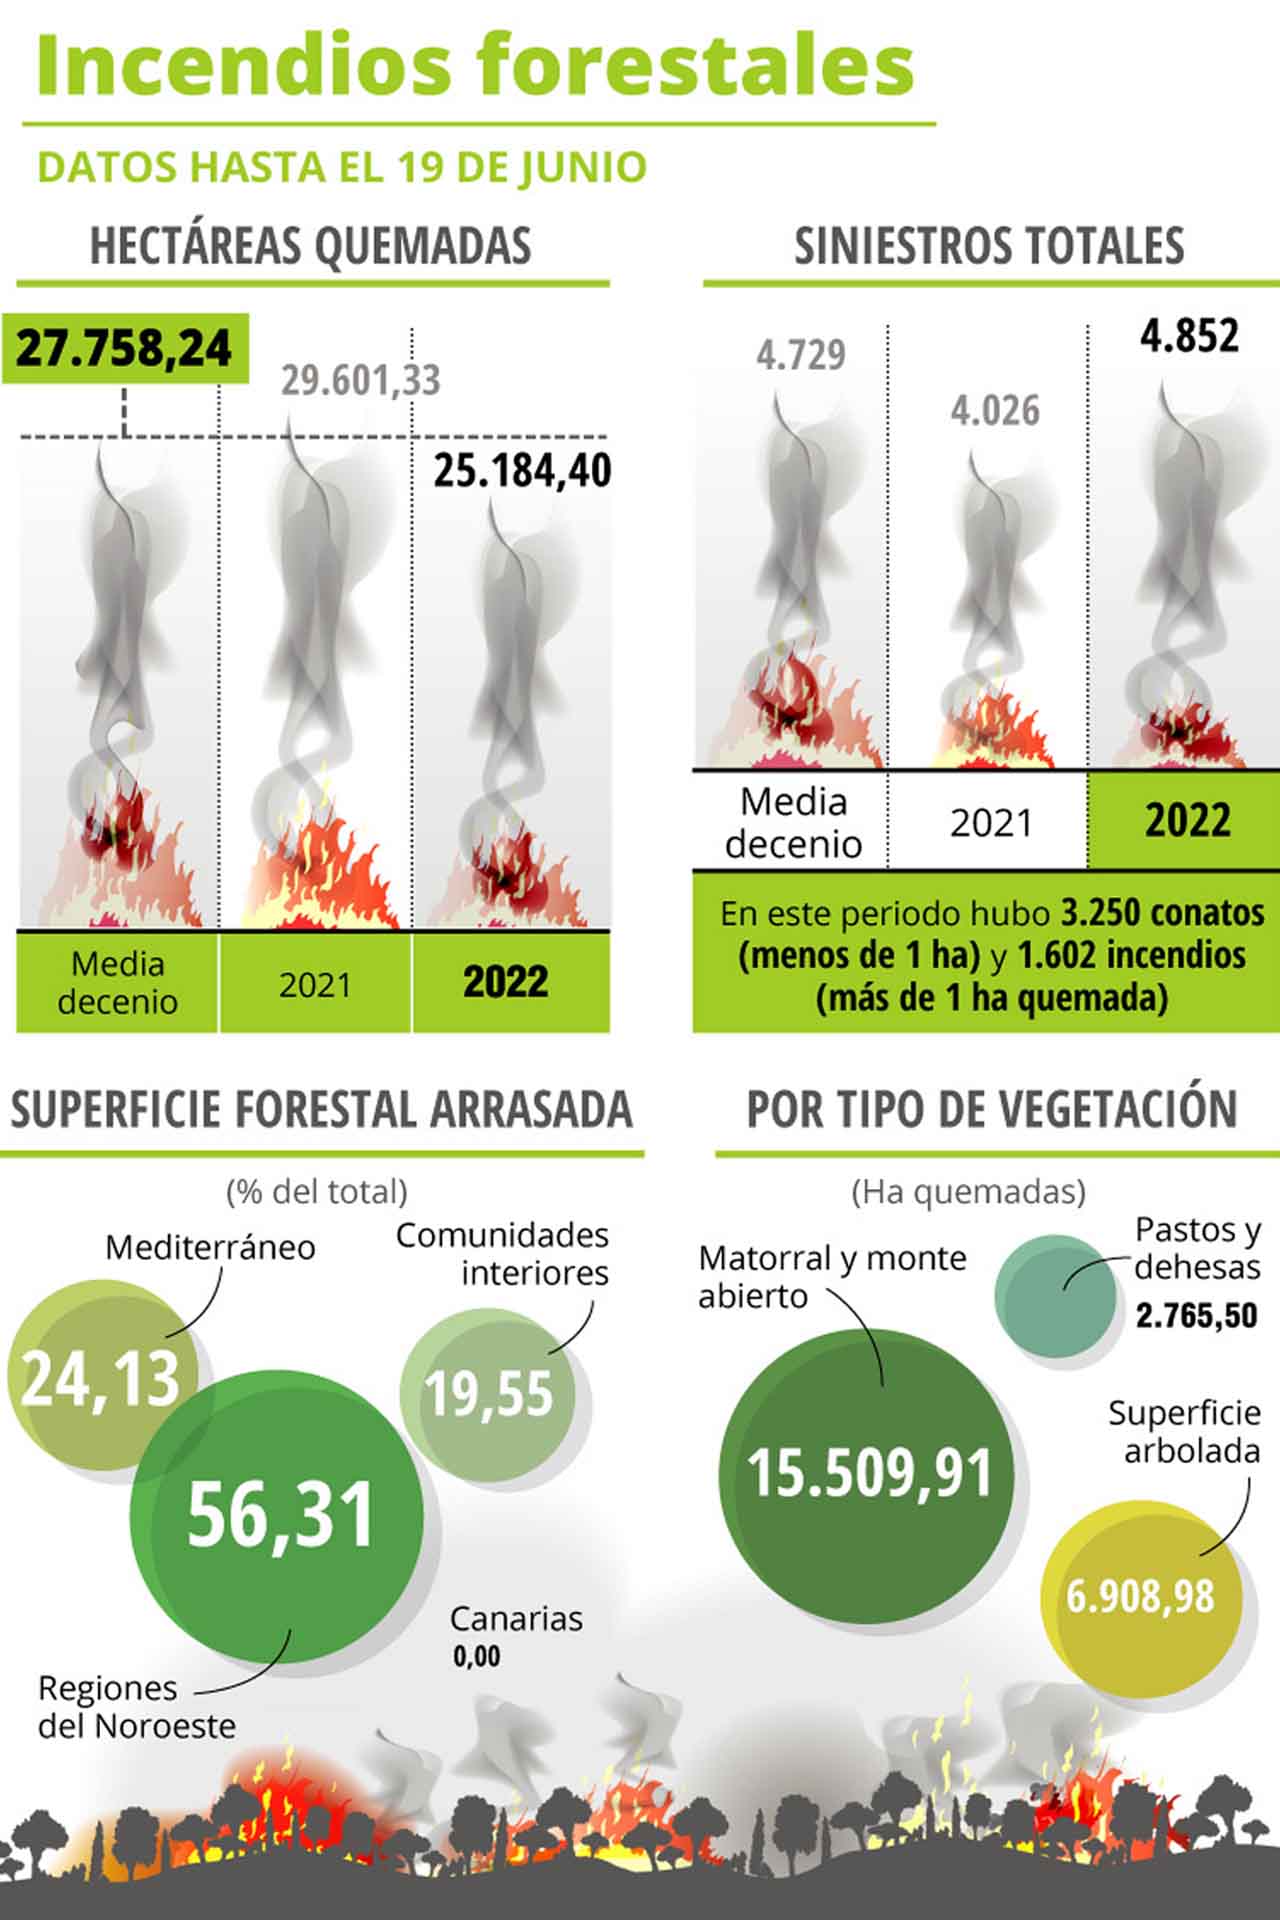 Incendios forestales en España según datos hasta el 19 de junio de 2022 / Imagen: EA